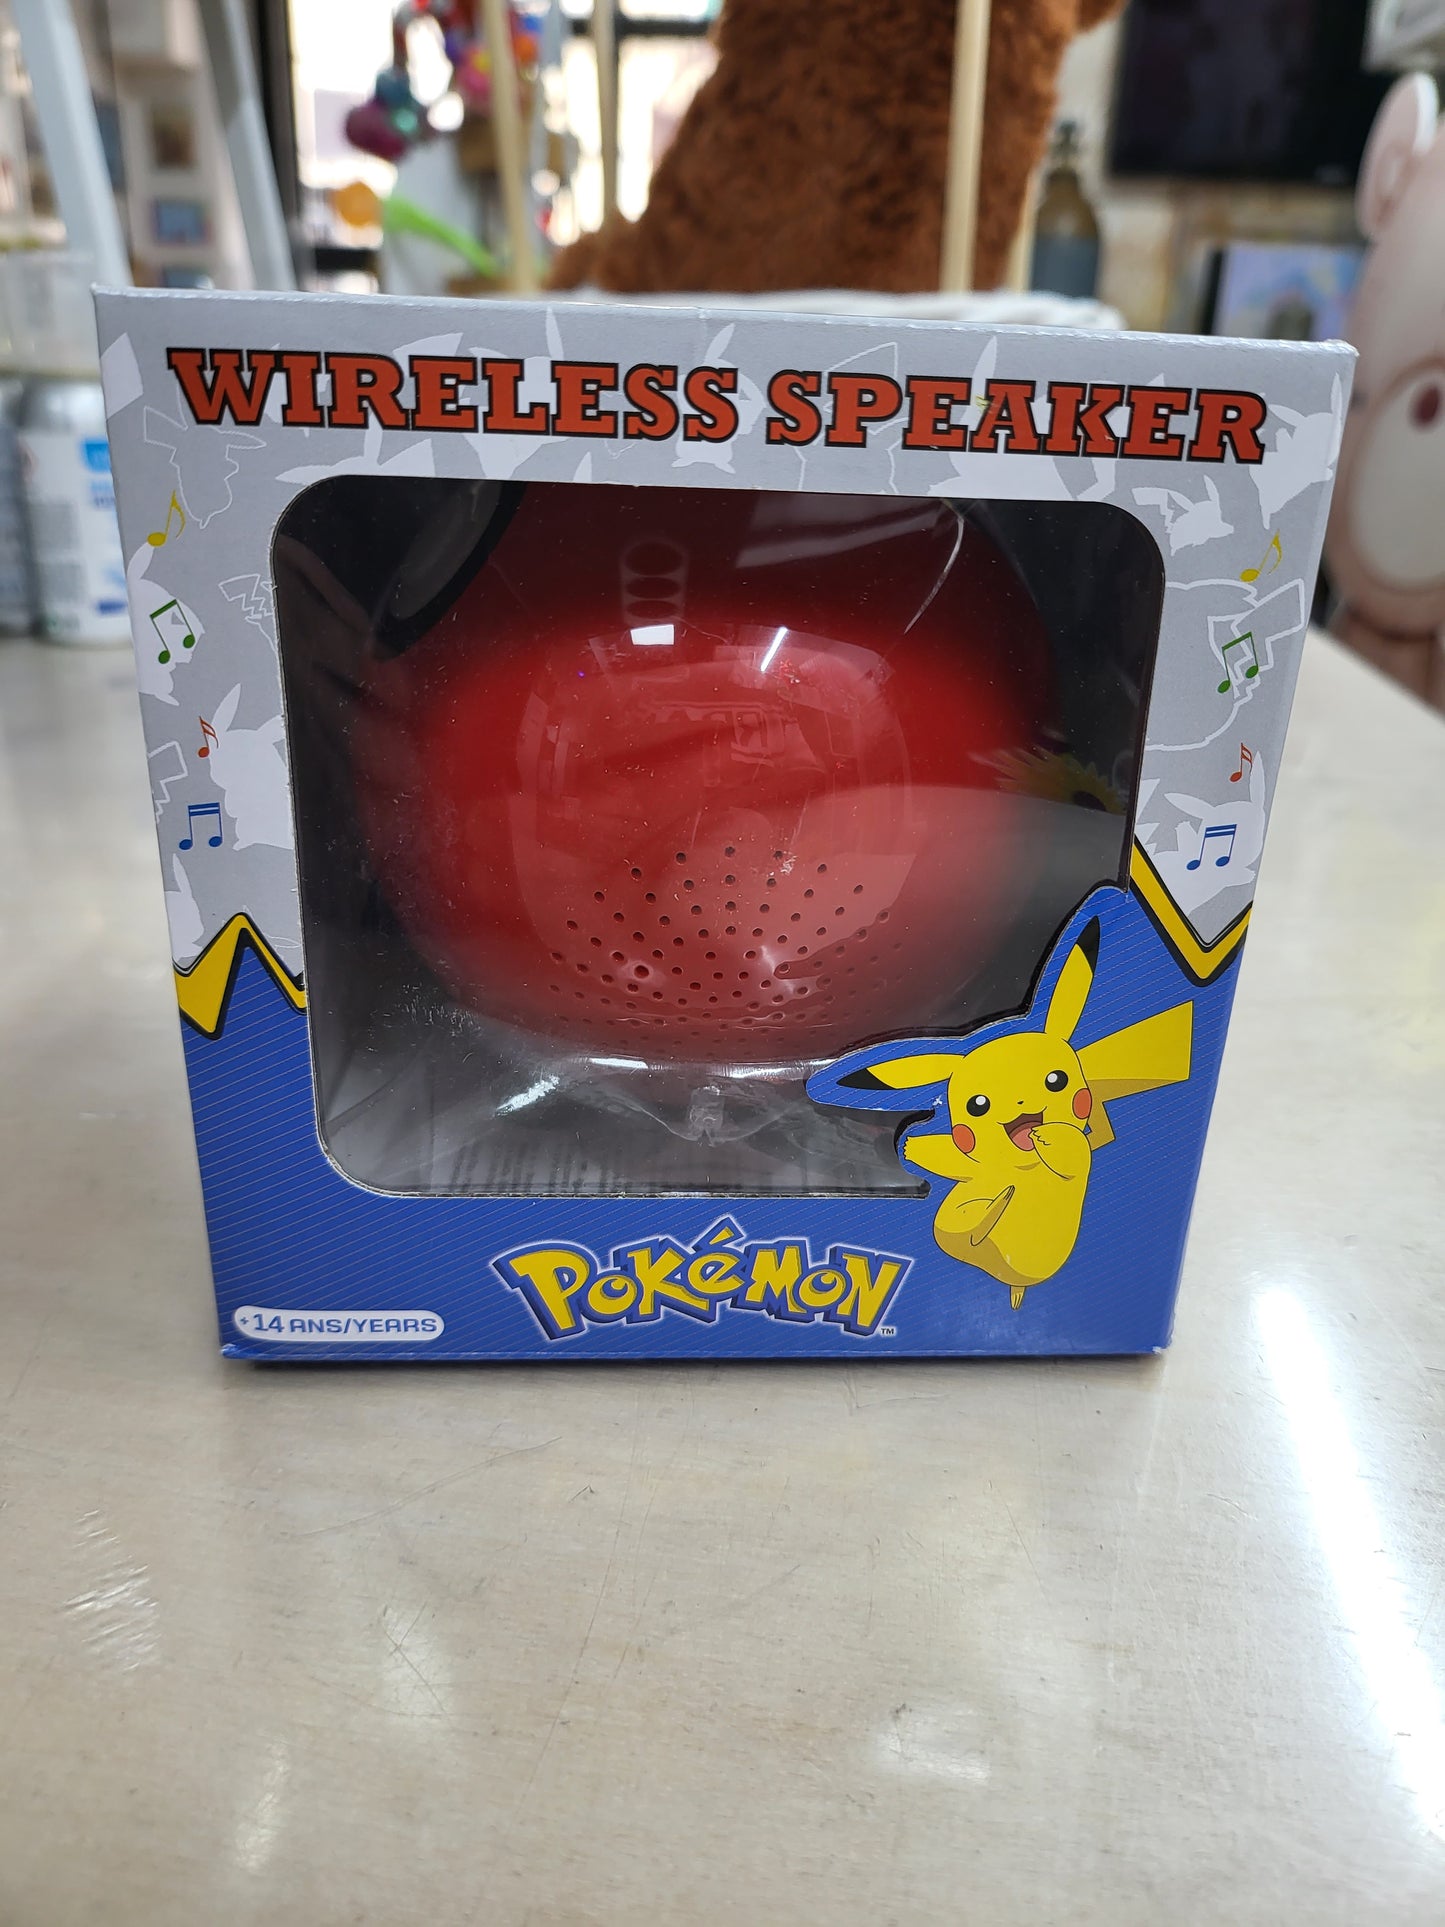 Speaker wireless pokemon poke ball